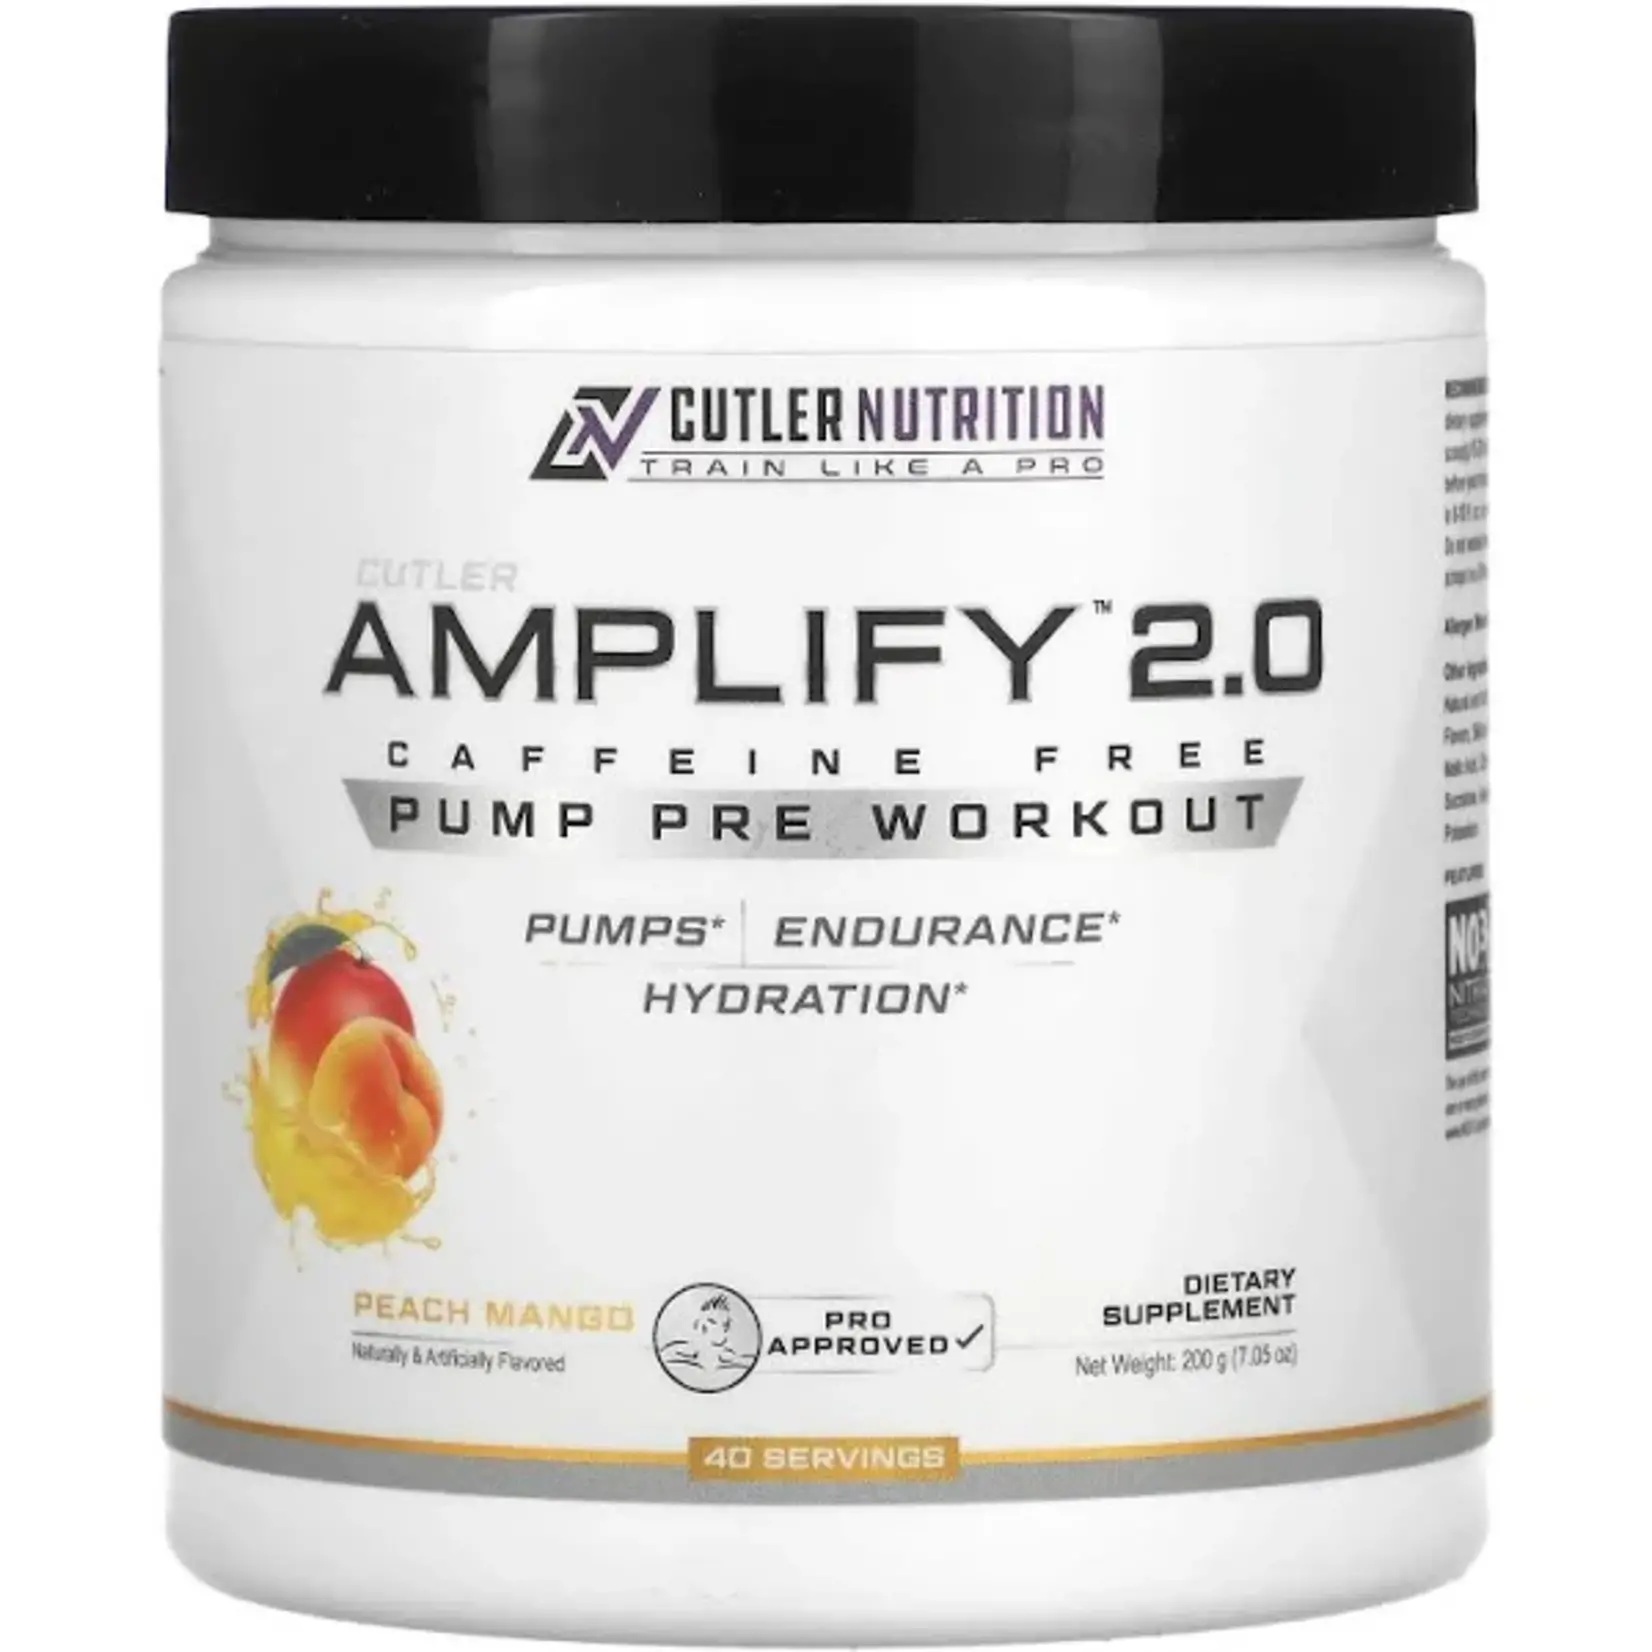 Cutler Nutrition Amplify V2